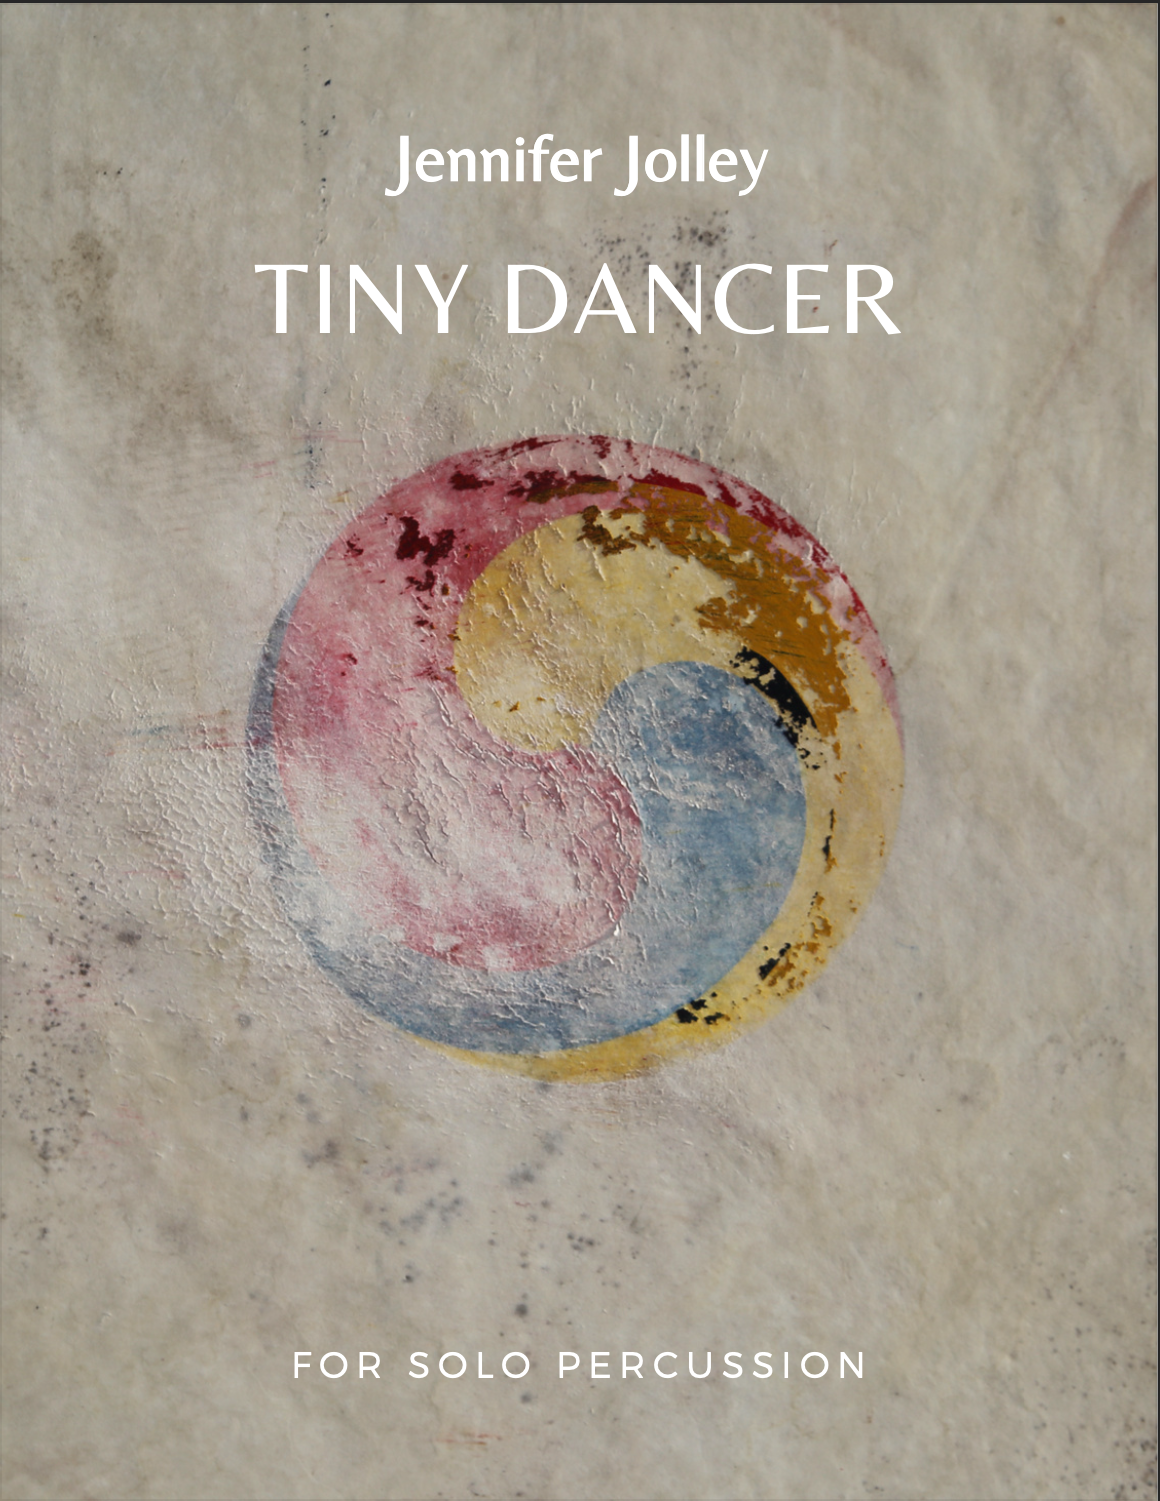 Tiny Dancer by Jennifer Jolley